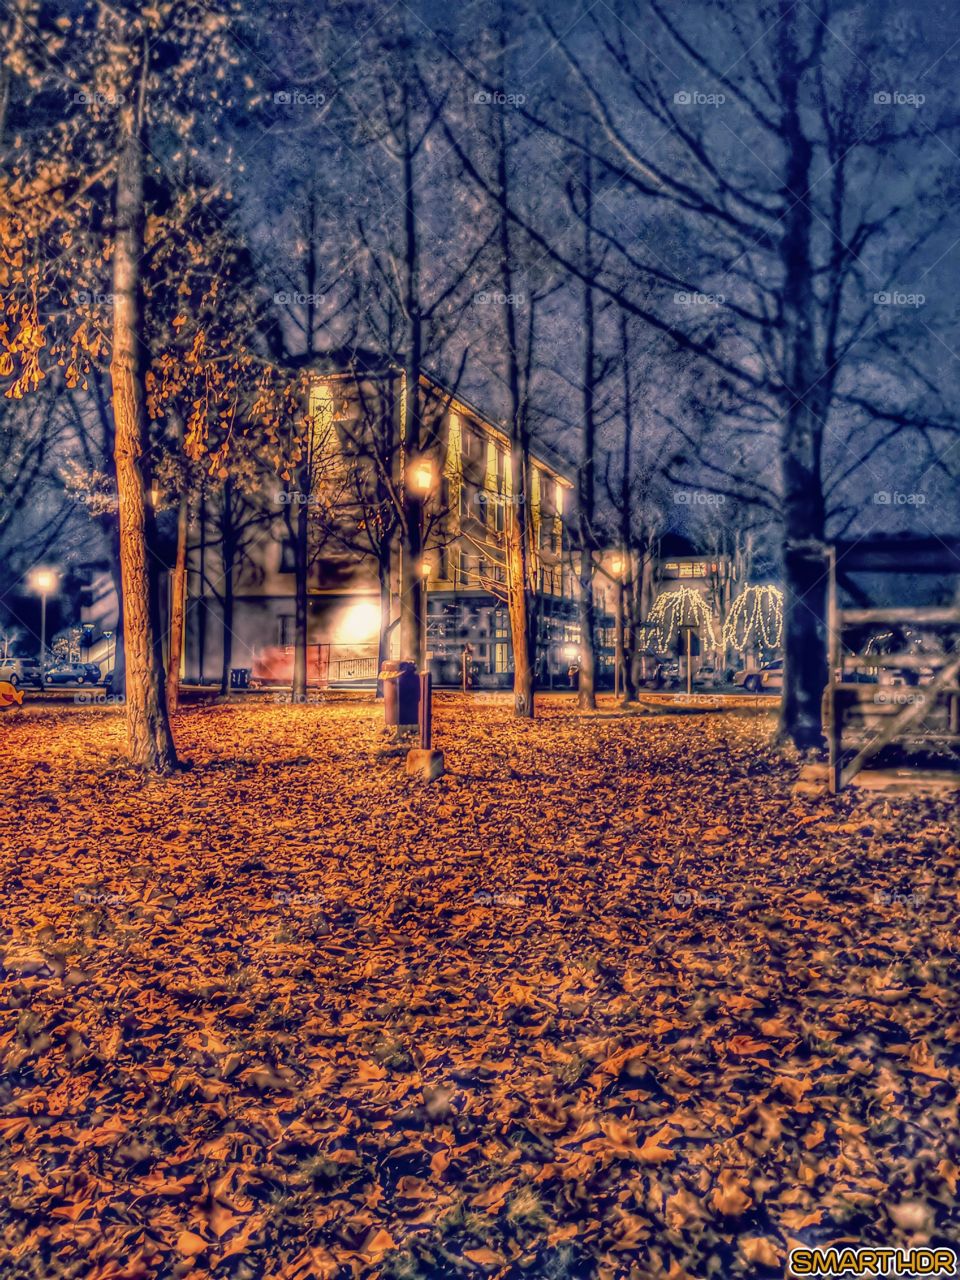 Autumn Evening